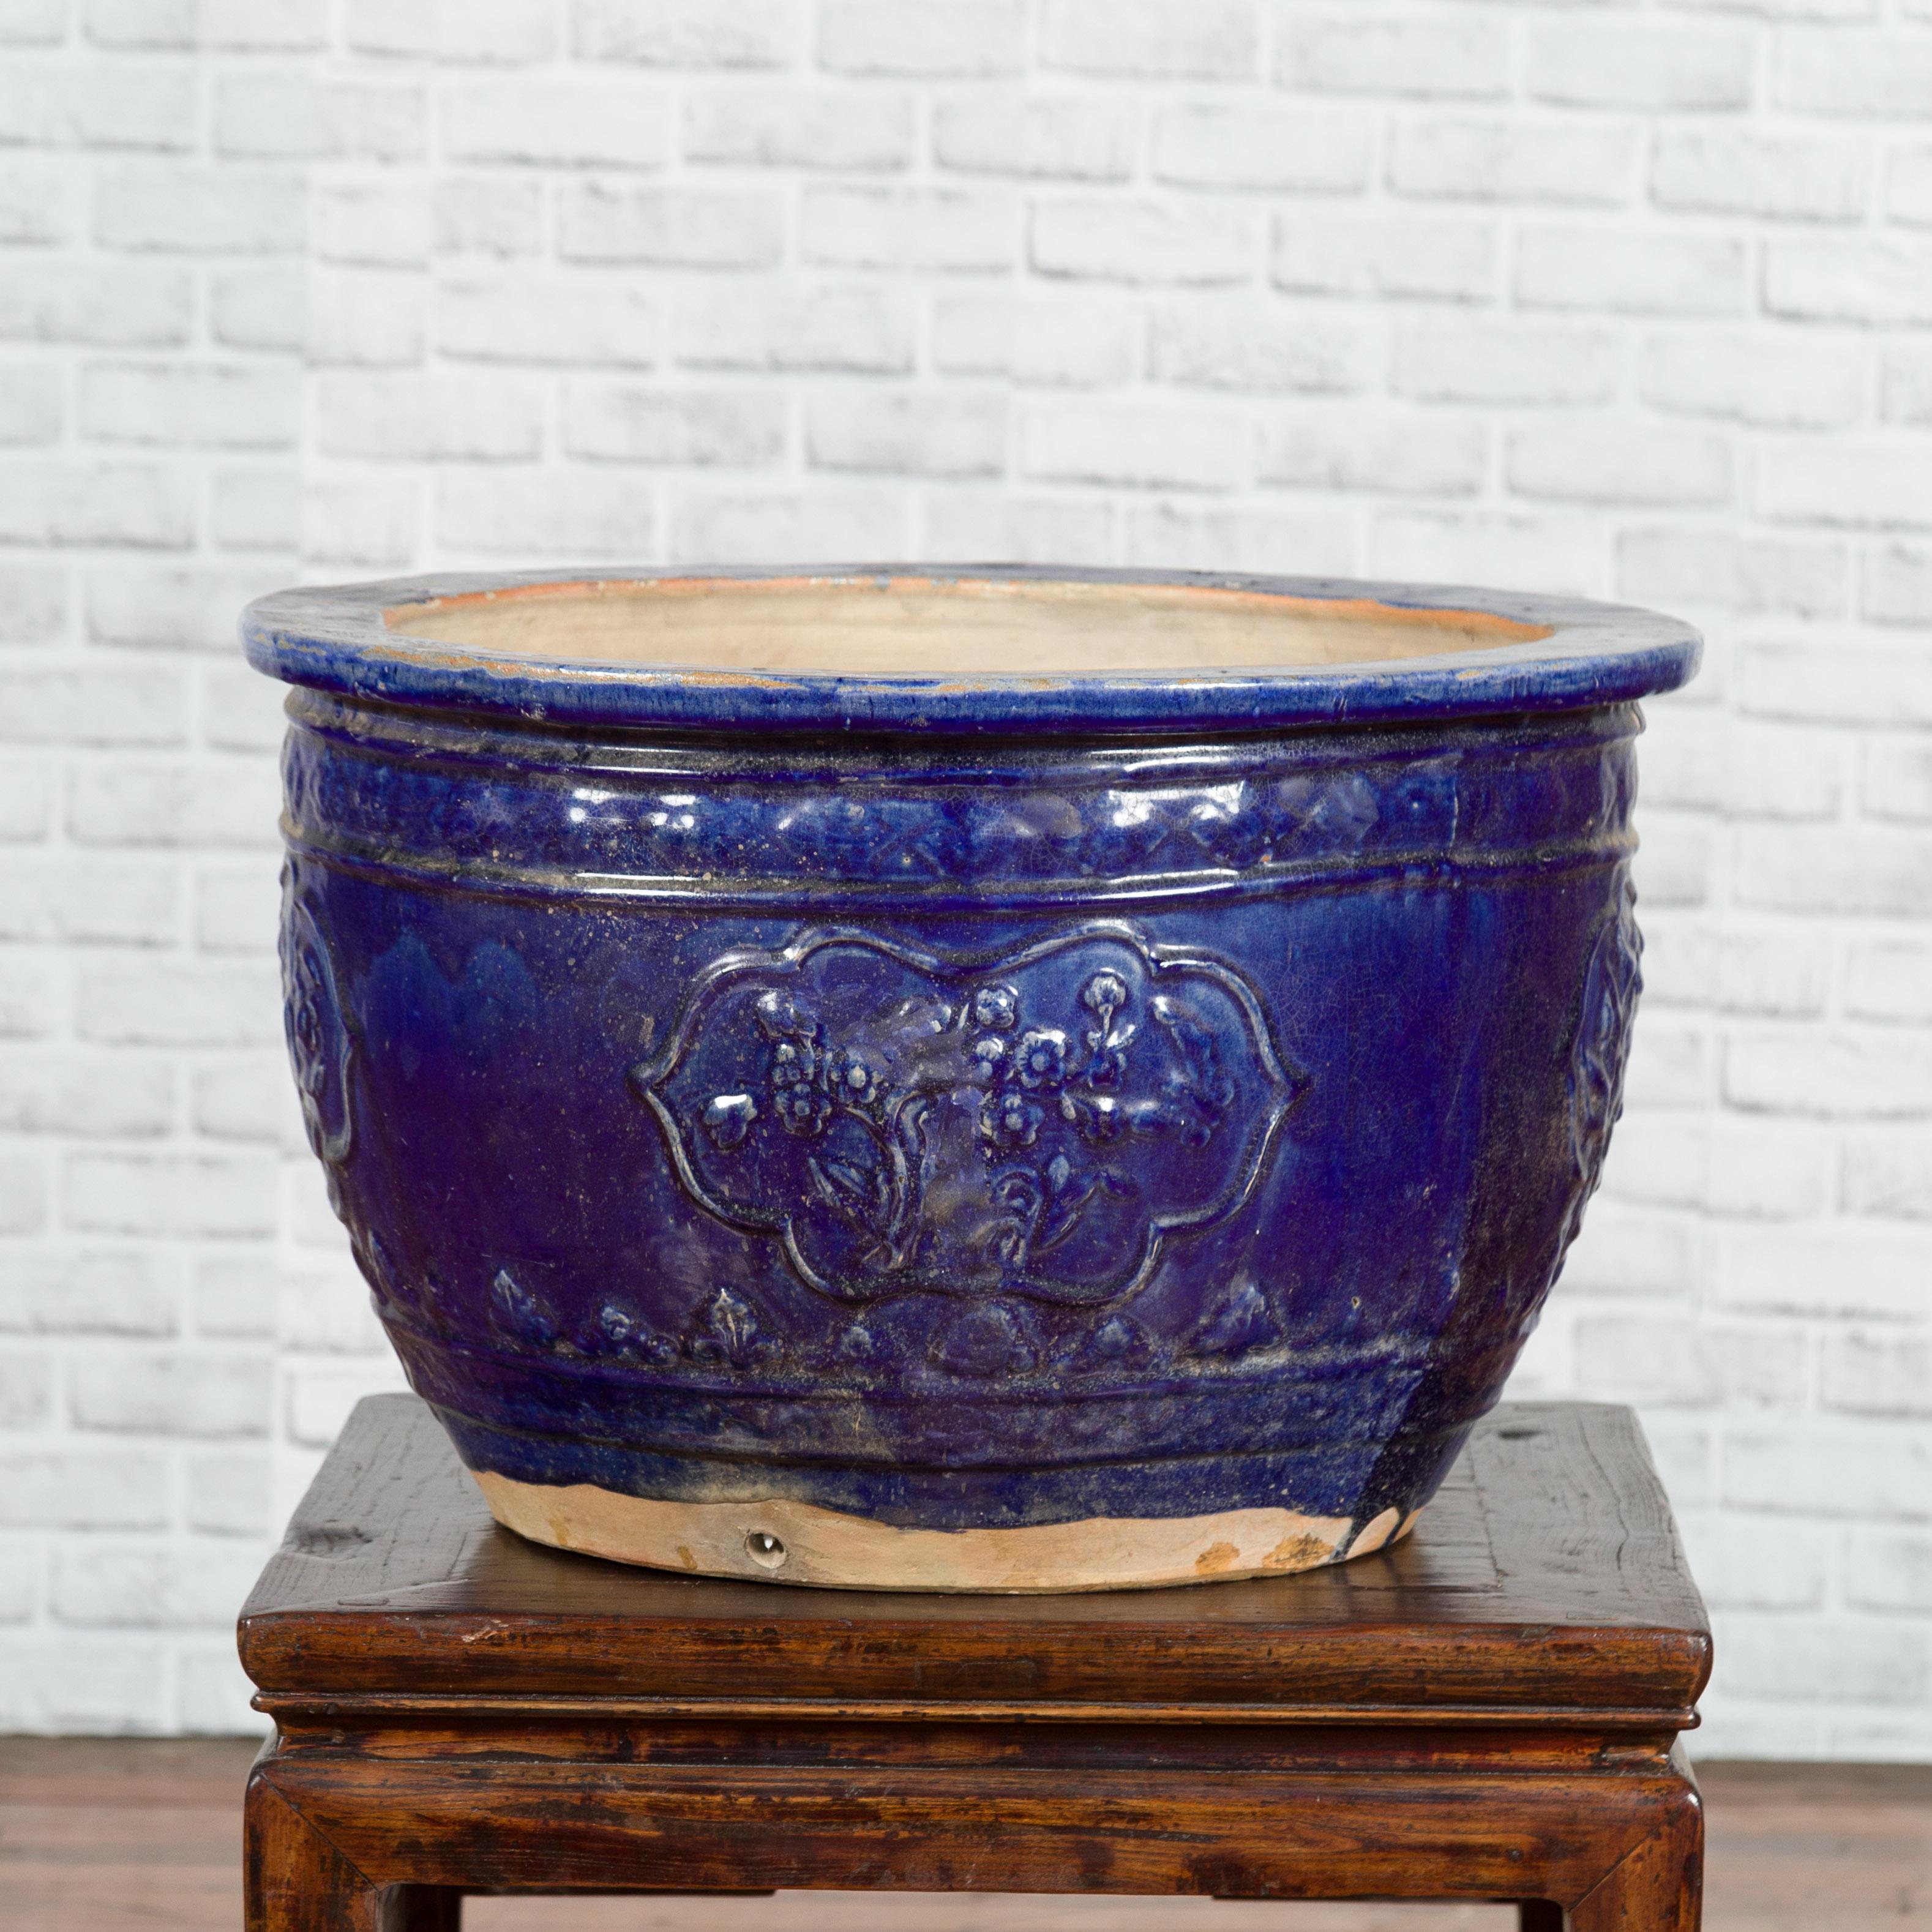 Grande jardinière vietnamienne annamite bleu royal du XIXe siècle à décor floral. Fabriquée à la main au cours du XIXe siècle, cette jardinière présente une silhouette circulaire ornée d'une glaçure bleu royal présentant un bel aspect usé par le